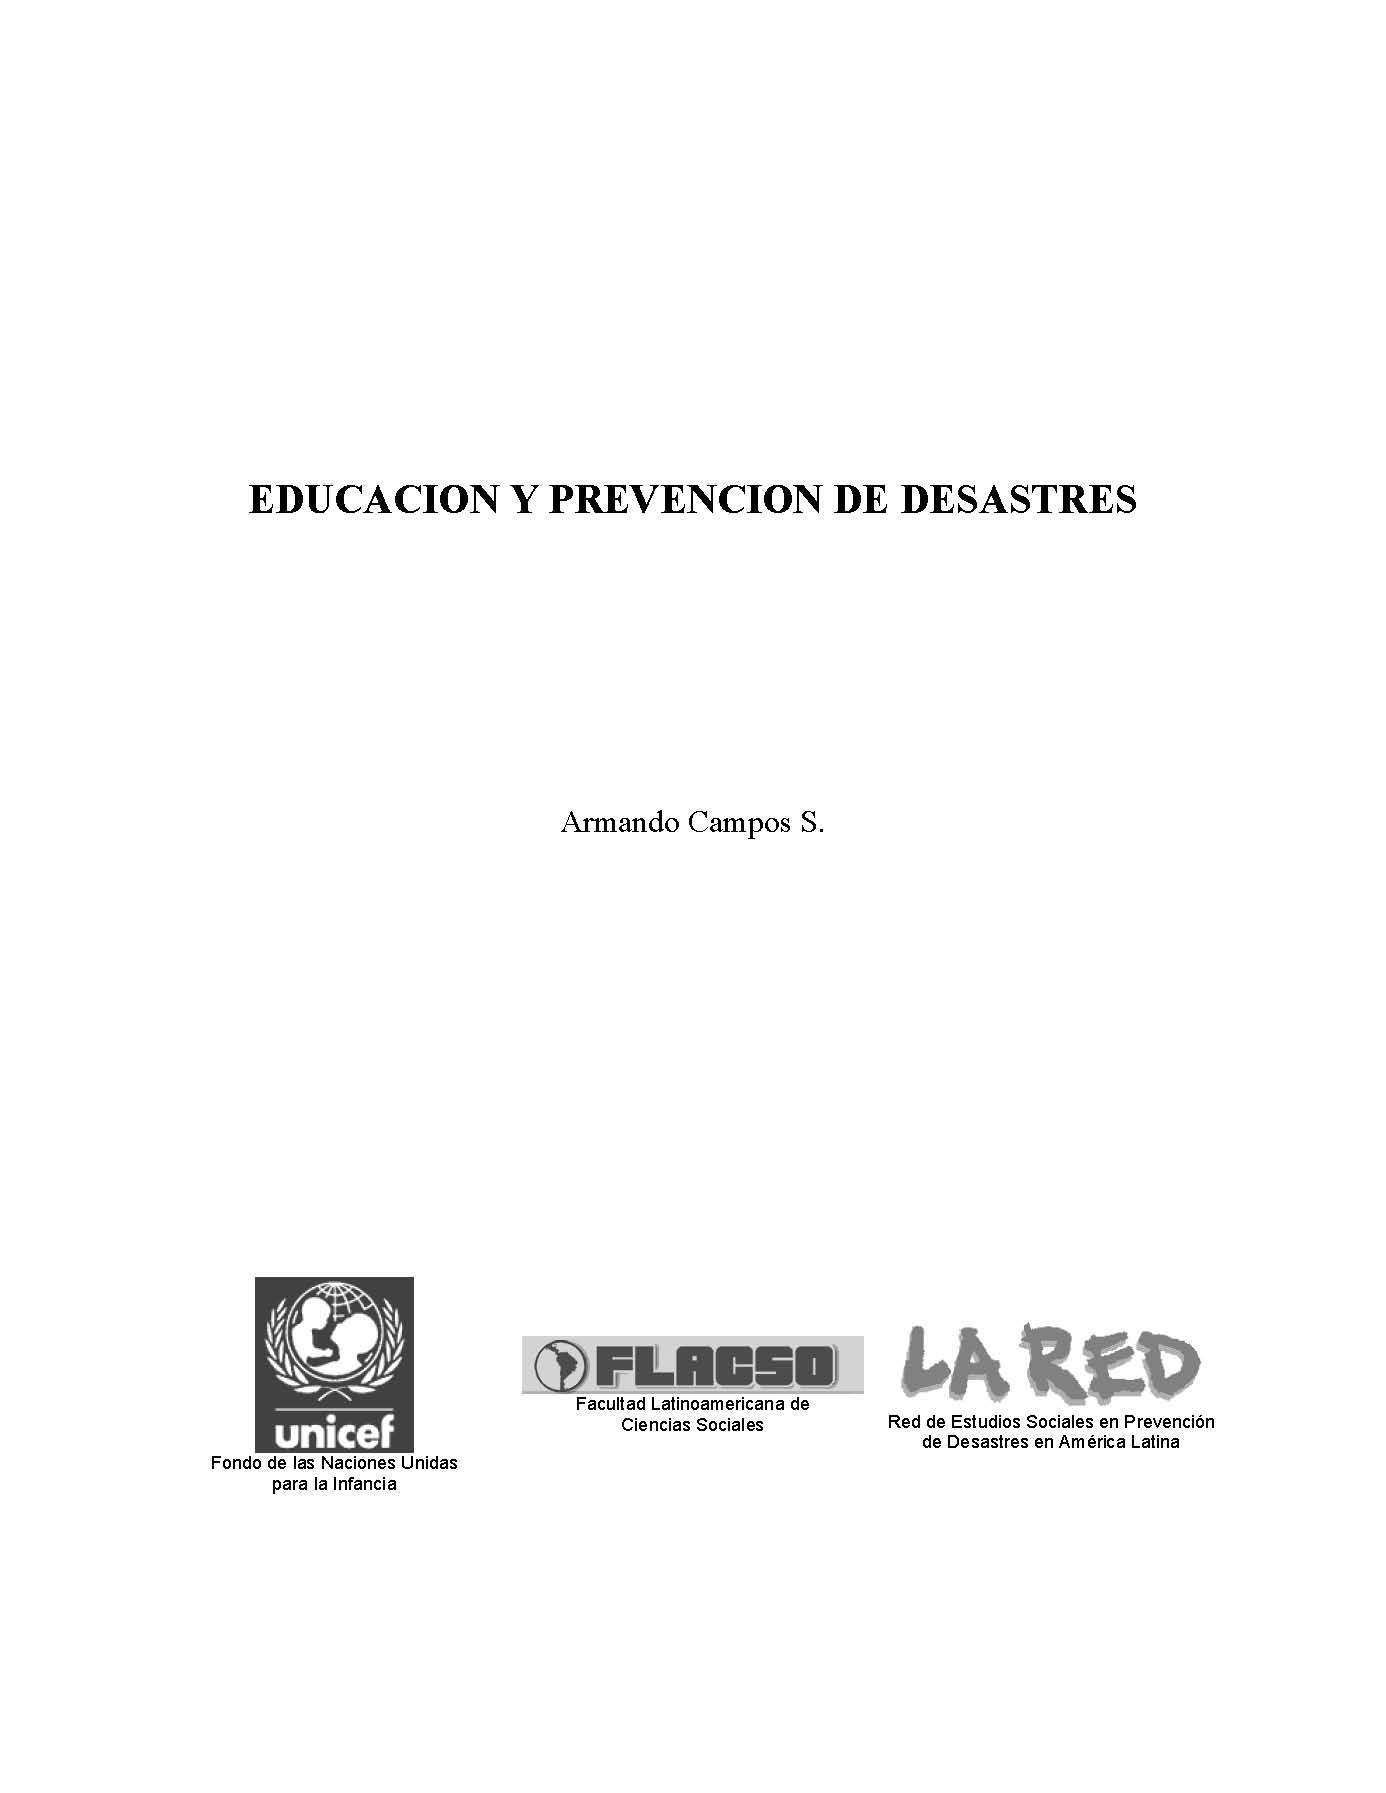 [2000] Educación y prevención de desastres